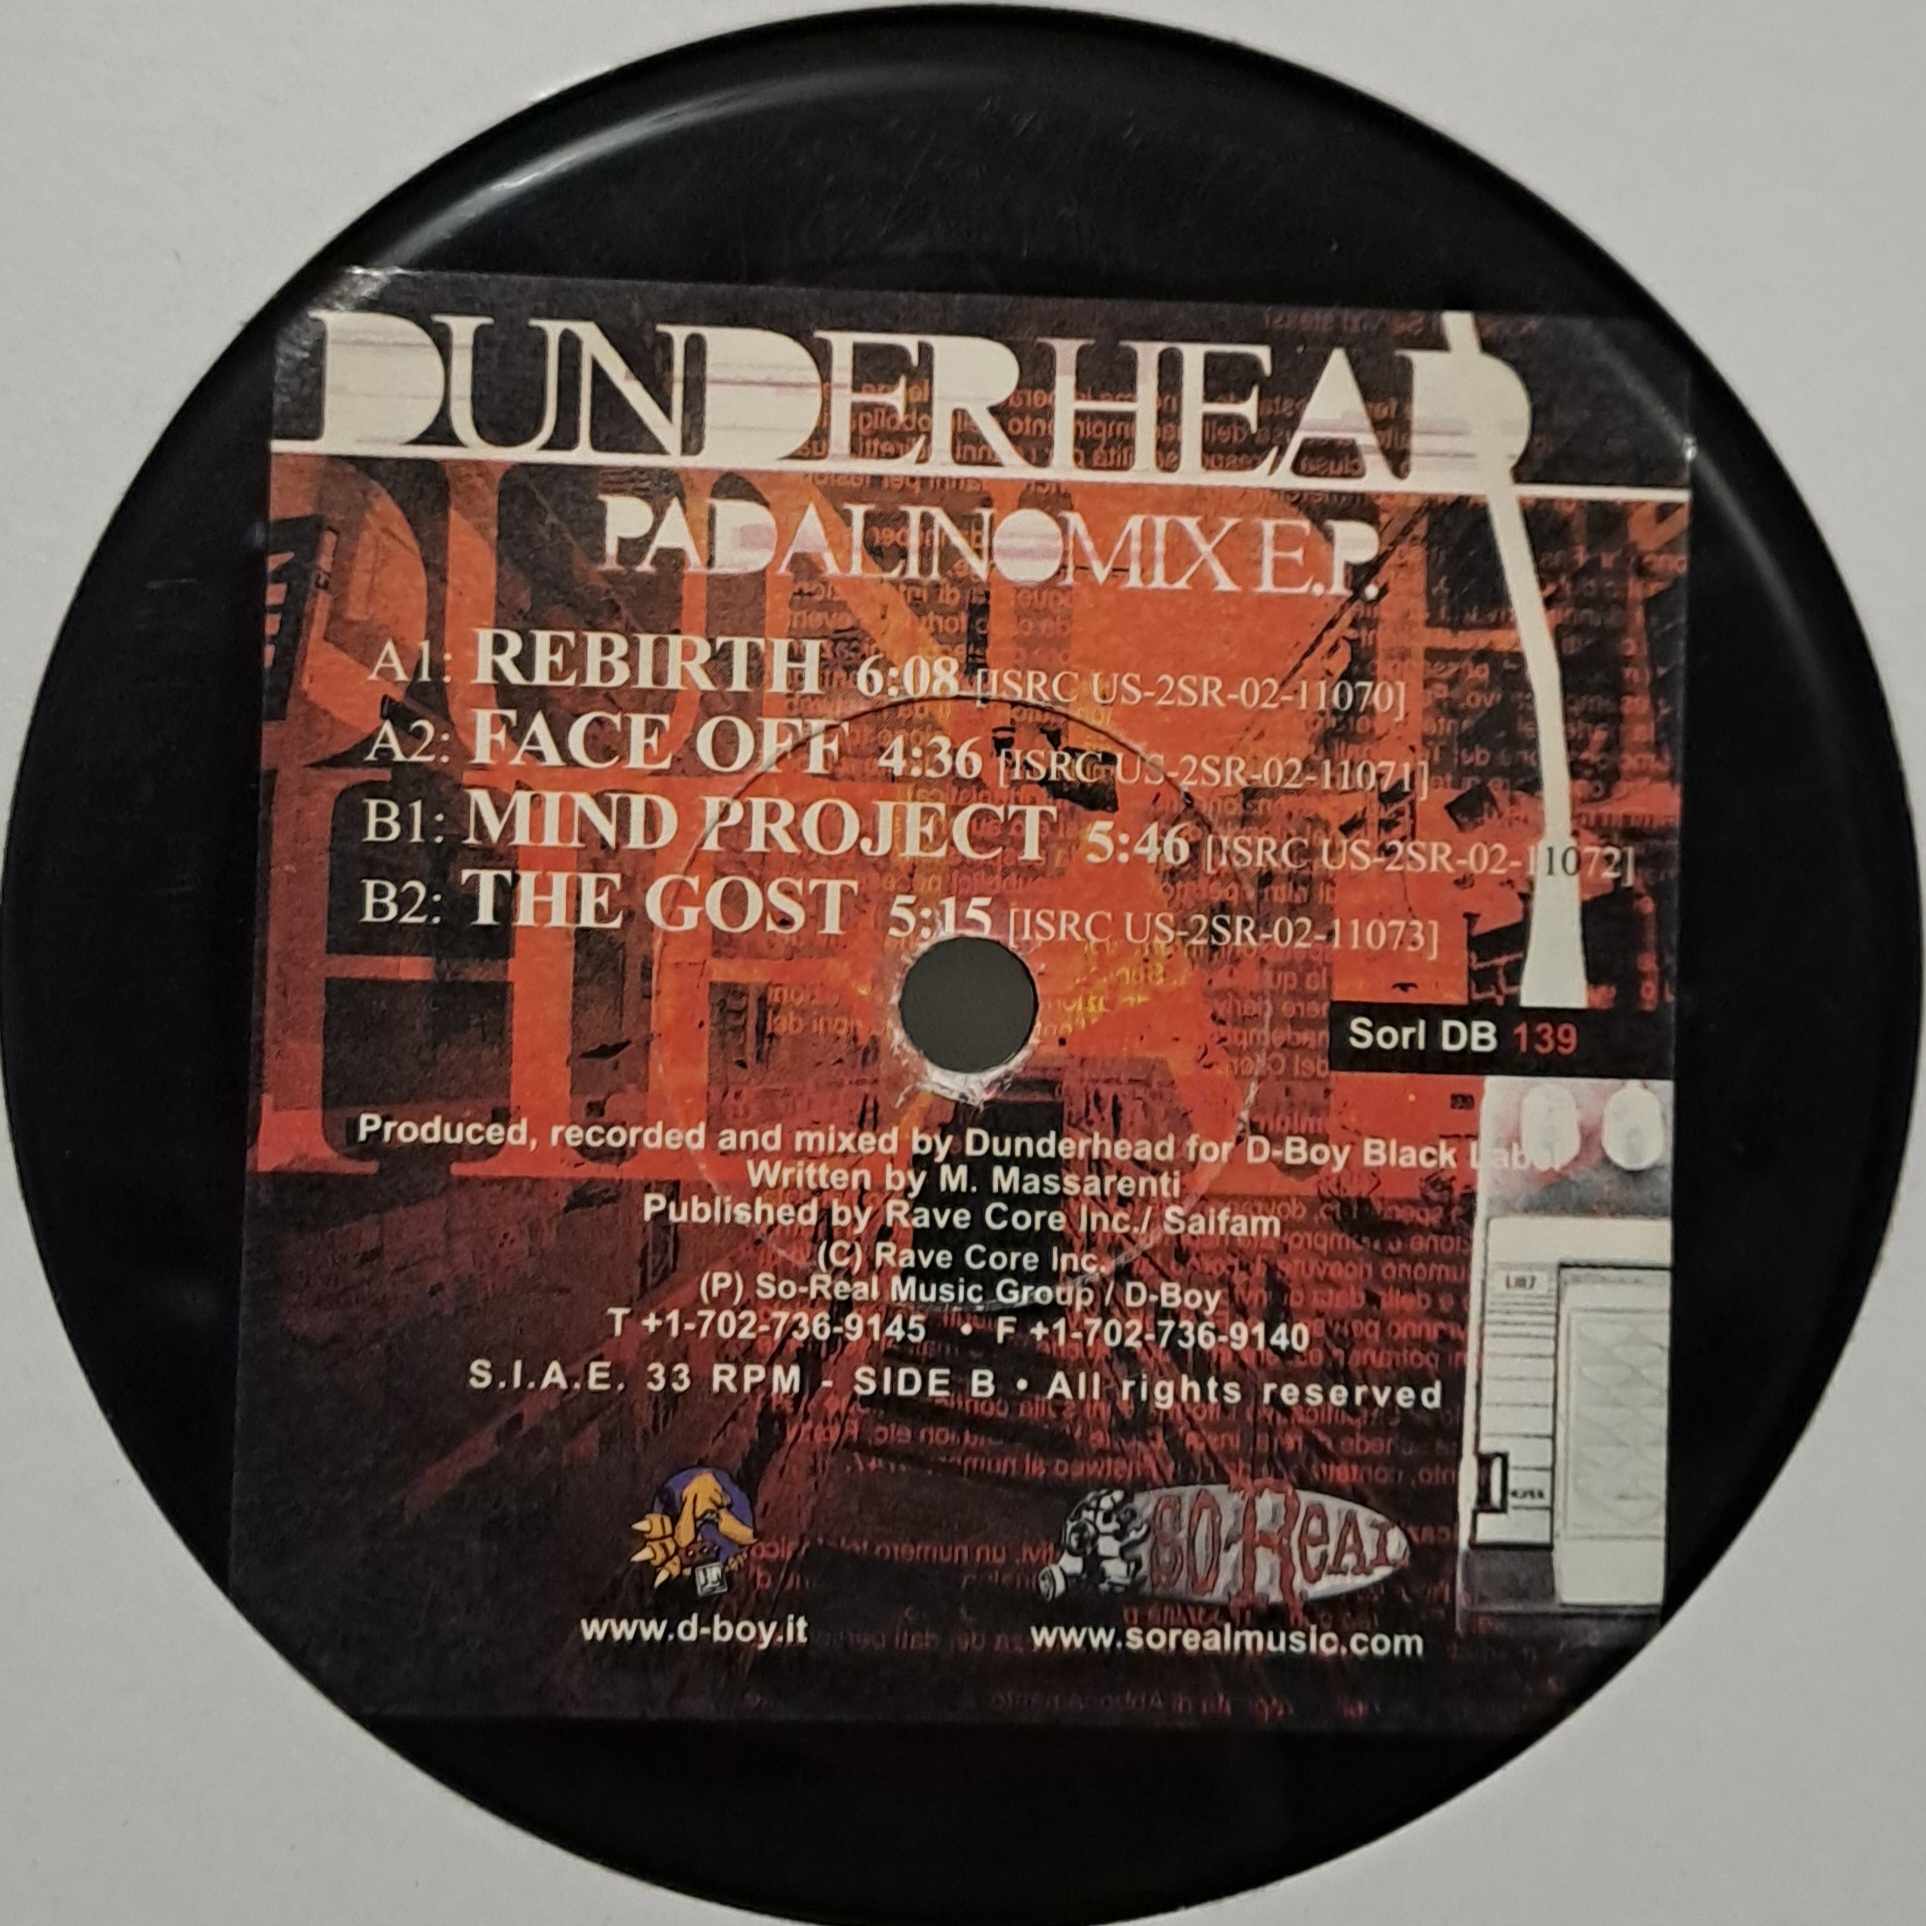 Sorl DB 139 - vinyle gabber